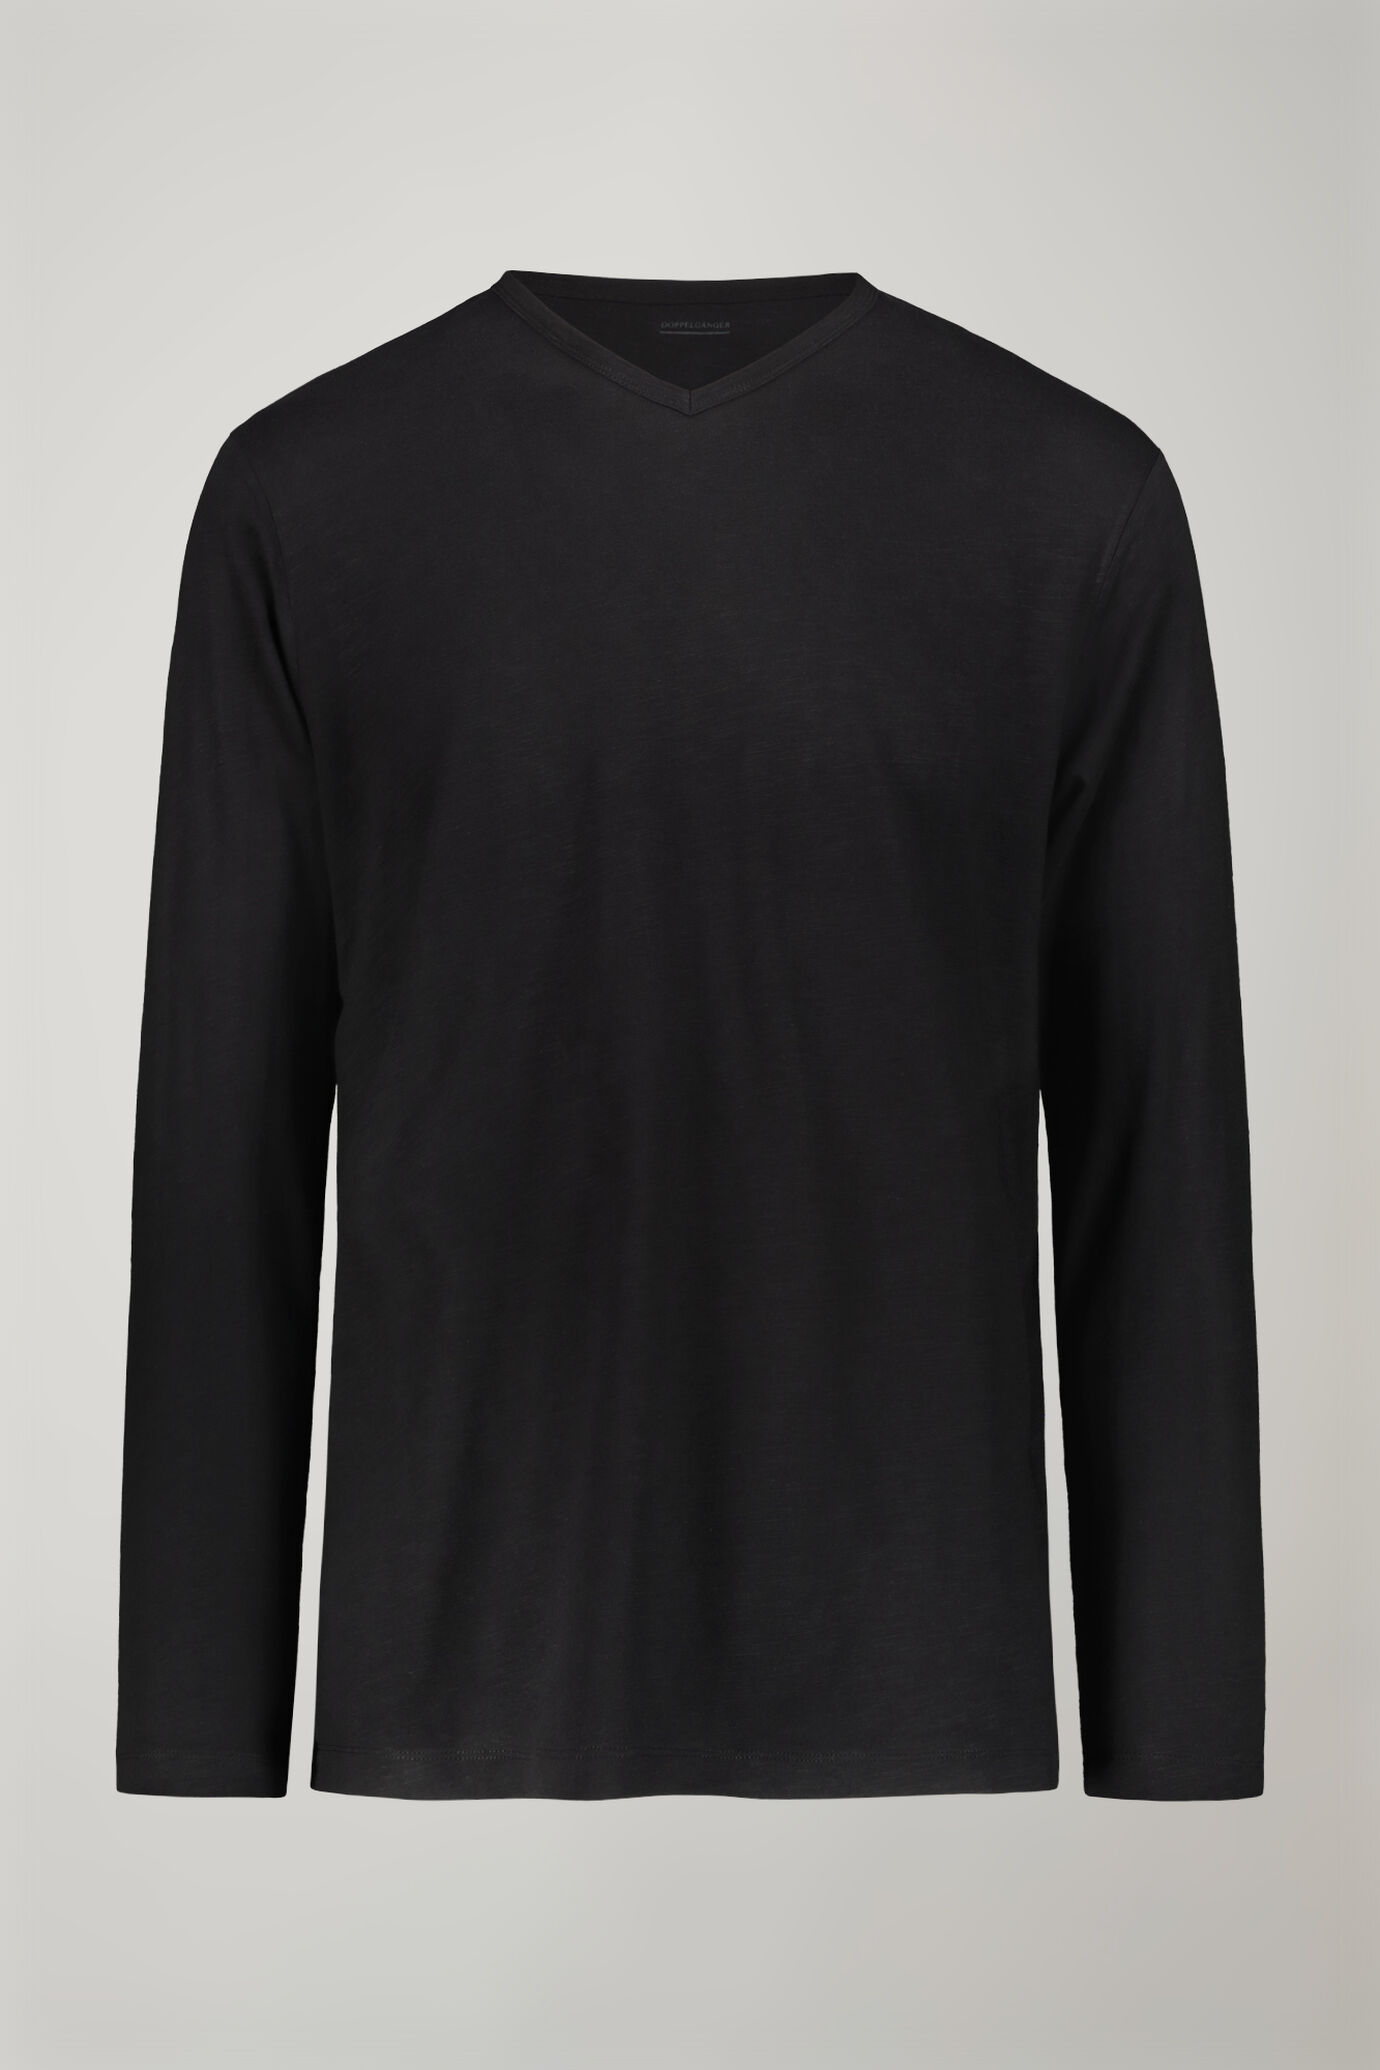 Herren-T-Shirt mit V-Ausschnitt und langen Ärmeln aus 100 % Slub-Baumwolle in normaler Passform image number 4